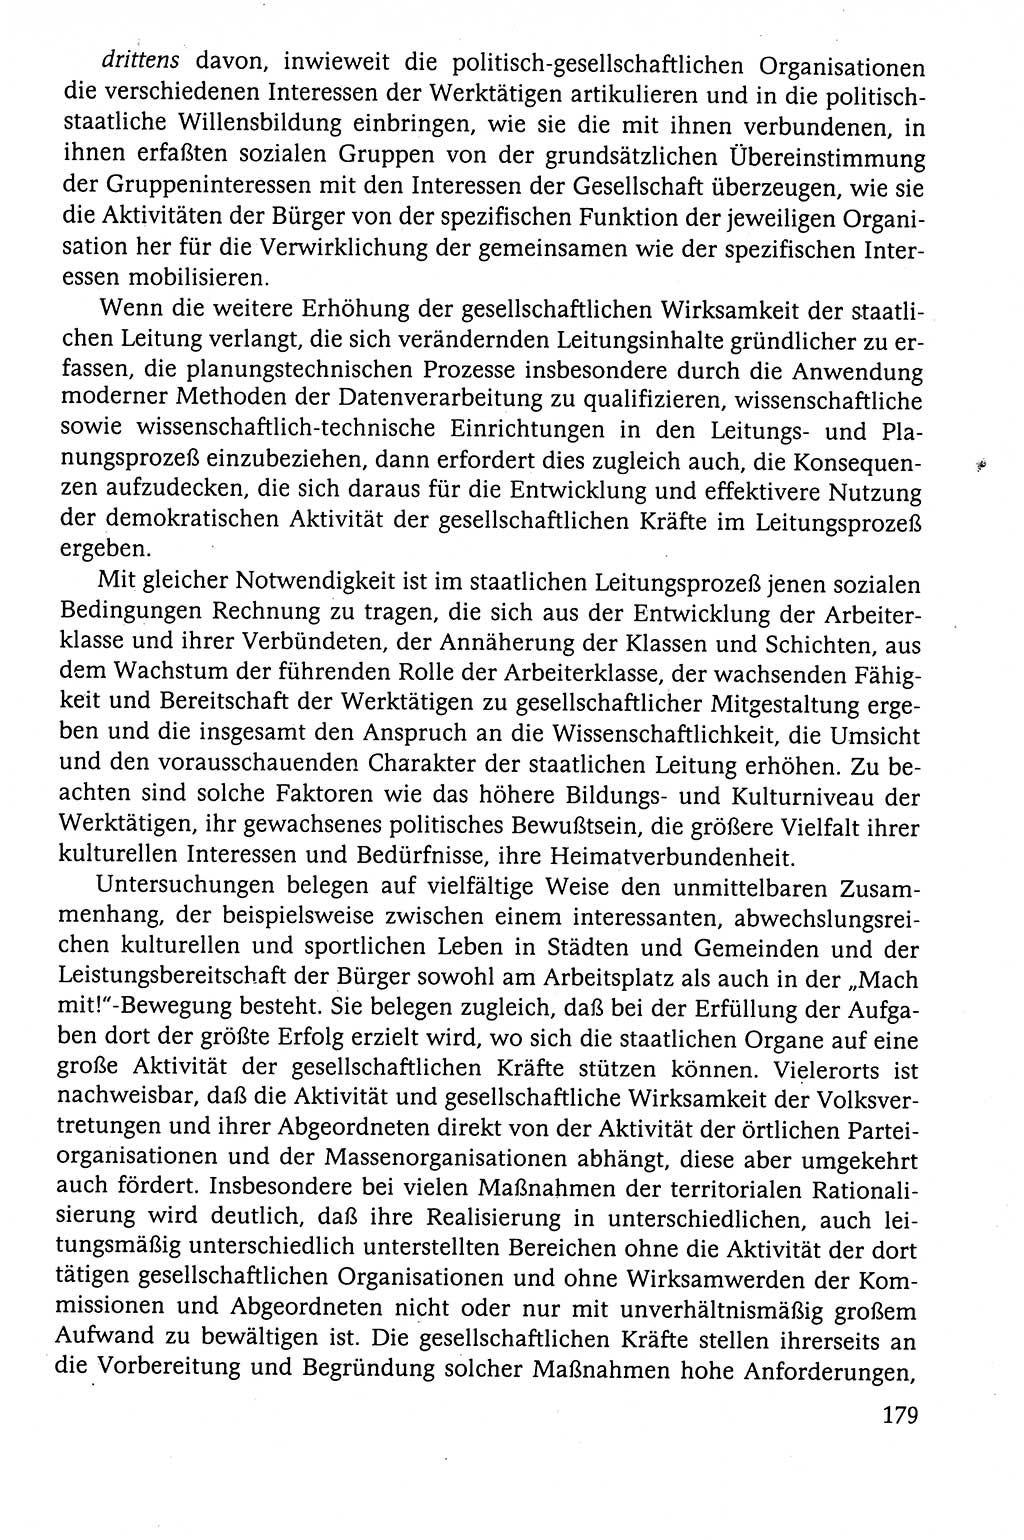 Der Staat im politischen System der DDR (Deutsche Demokratische Republik) 1986, Seite 179 (St. pol. Sys. DDR 1986, S. 179)